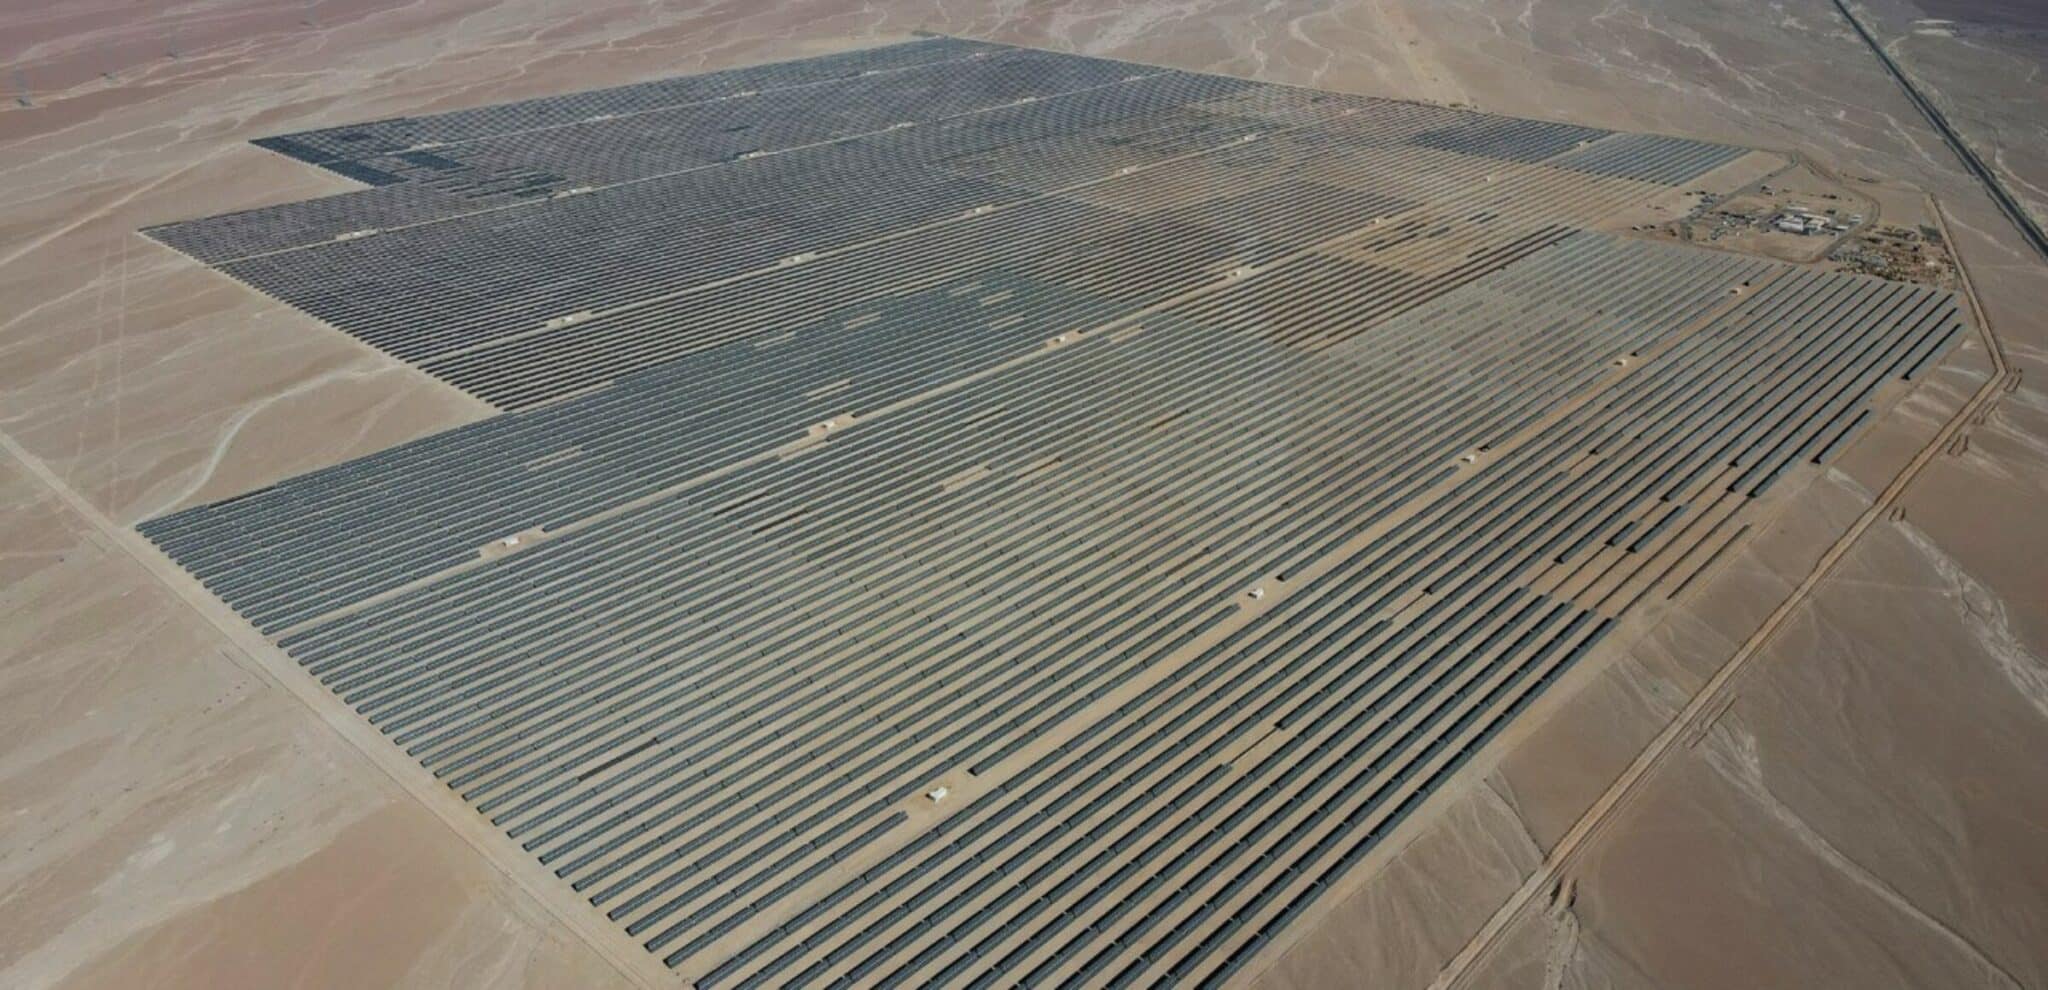 Guanchoi solar plant